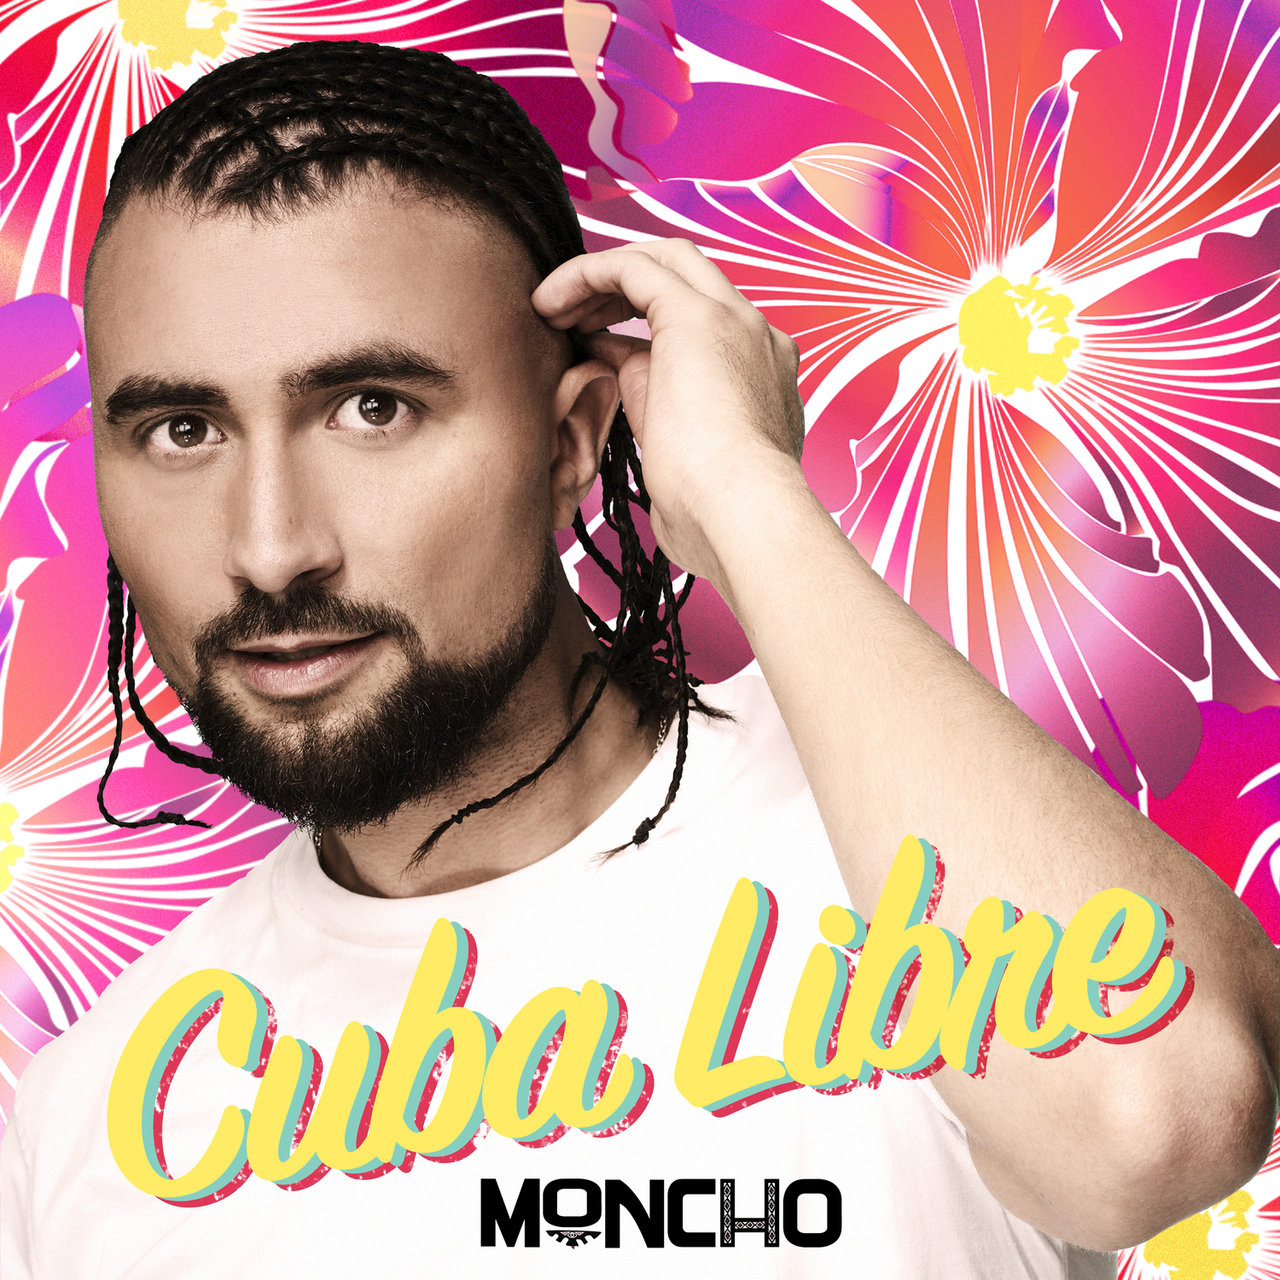 Moncho Cuba Libre cover artwork